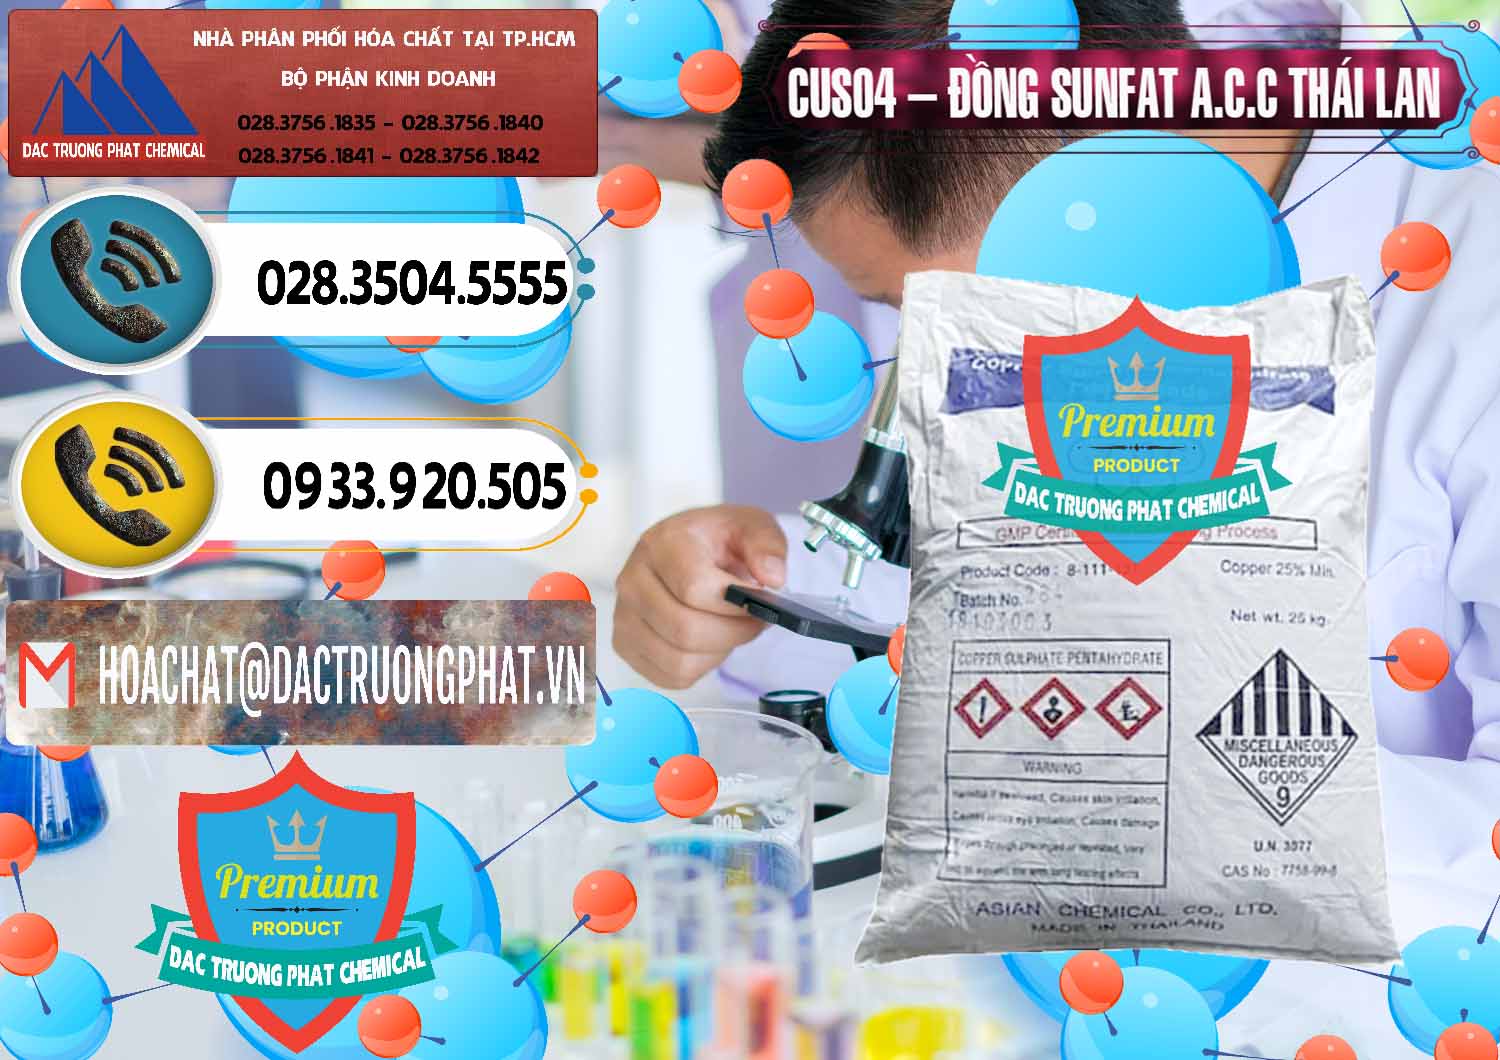 Đơn vị chuyên cung cấp - bán CuSO4 – Đồng Sunfat A.C.C Thái Lan - 0249 - Công ty cung cấp ( nhập khẩu ) hóa chất tại TP.HCM - hoachatdetnhuom.vn